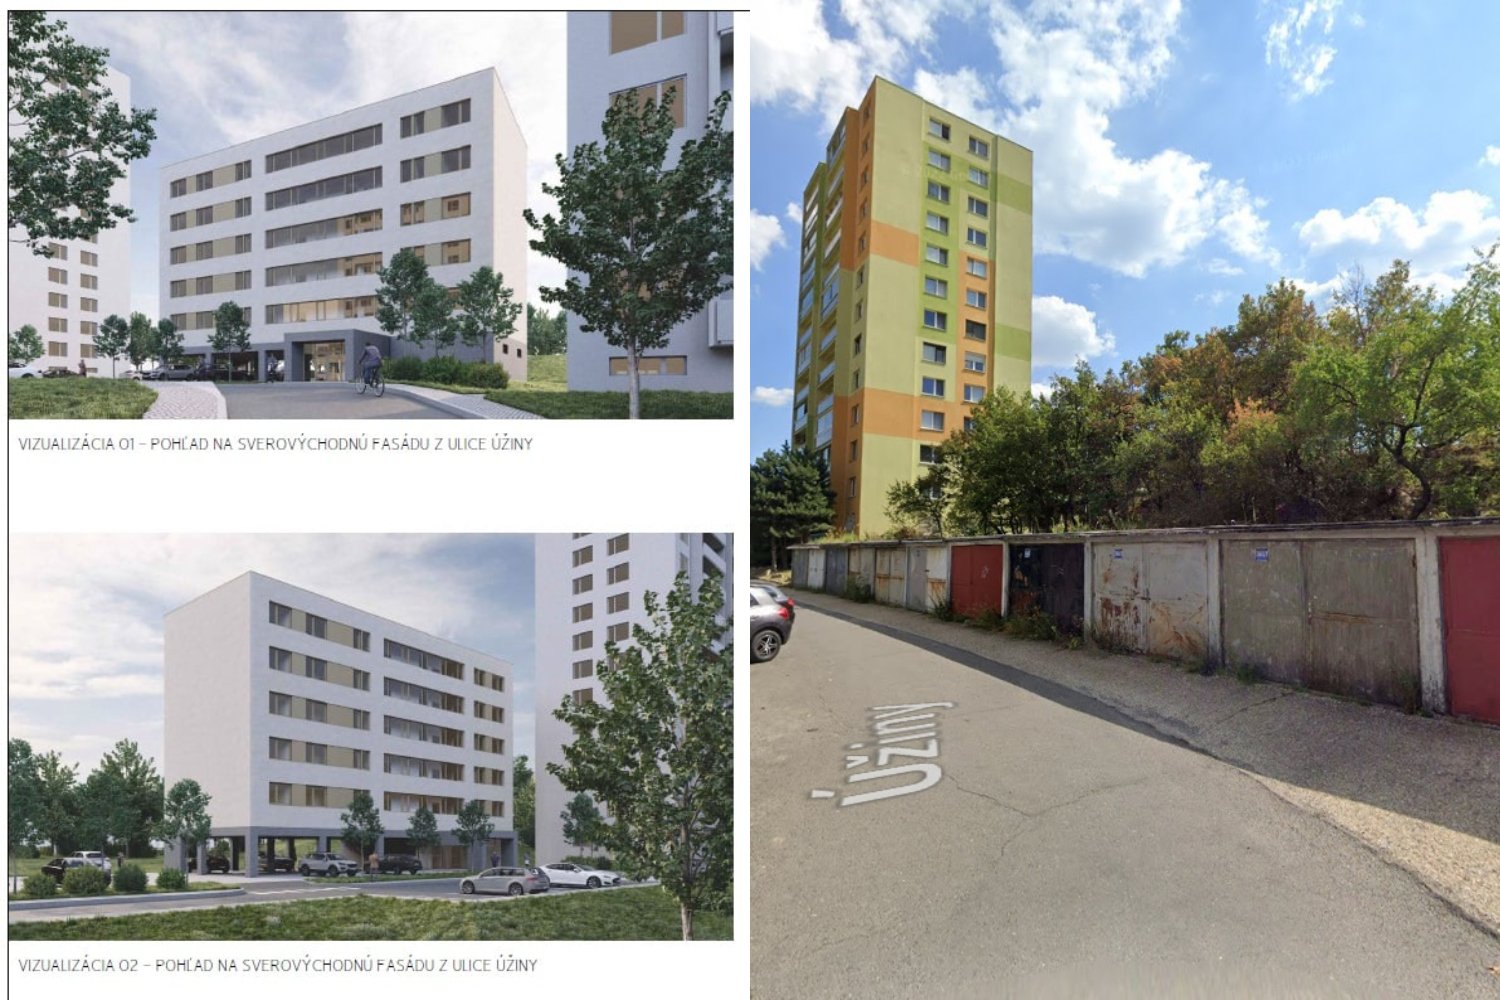 Zdroj: Facebook Michal Drotován - starosta mestskej časti Bratislava-Rača, Google StreetView